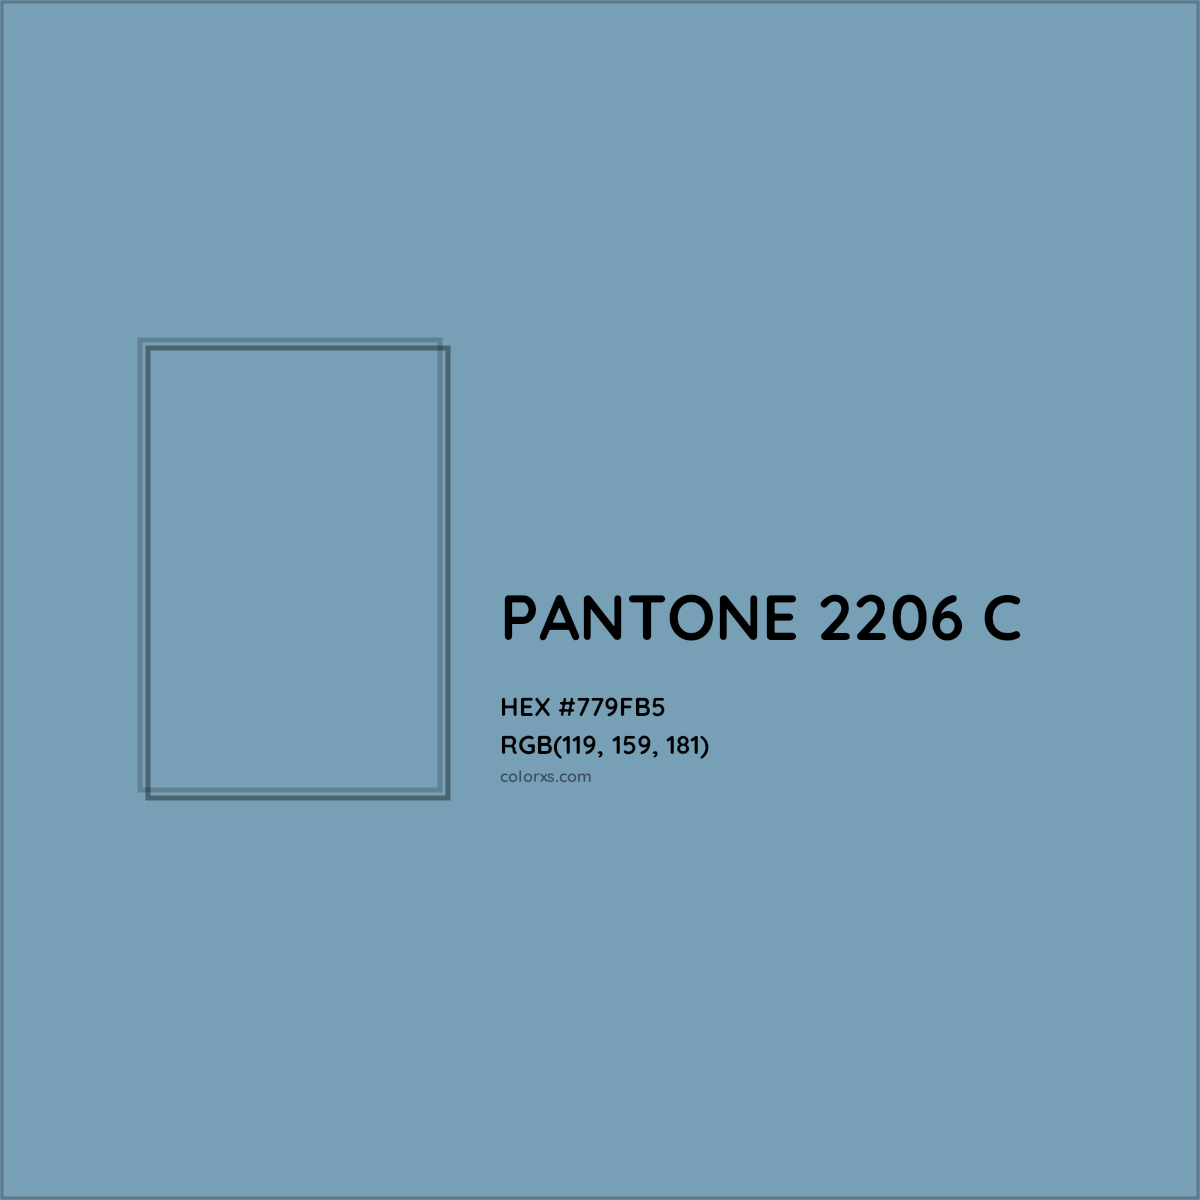 HEX #779FB5 PANTONE 2206 C CMS Pantone PMS - Color Code